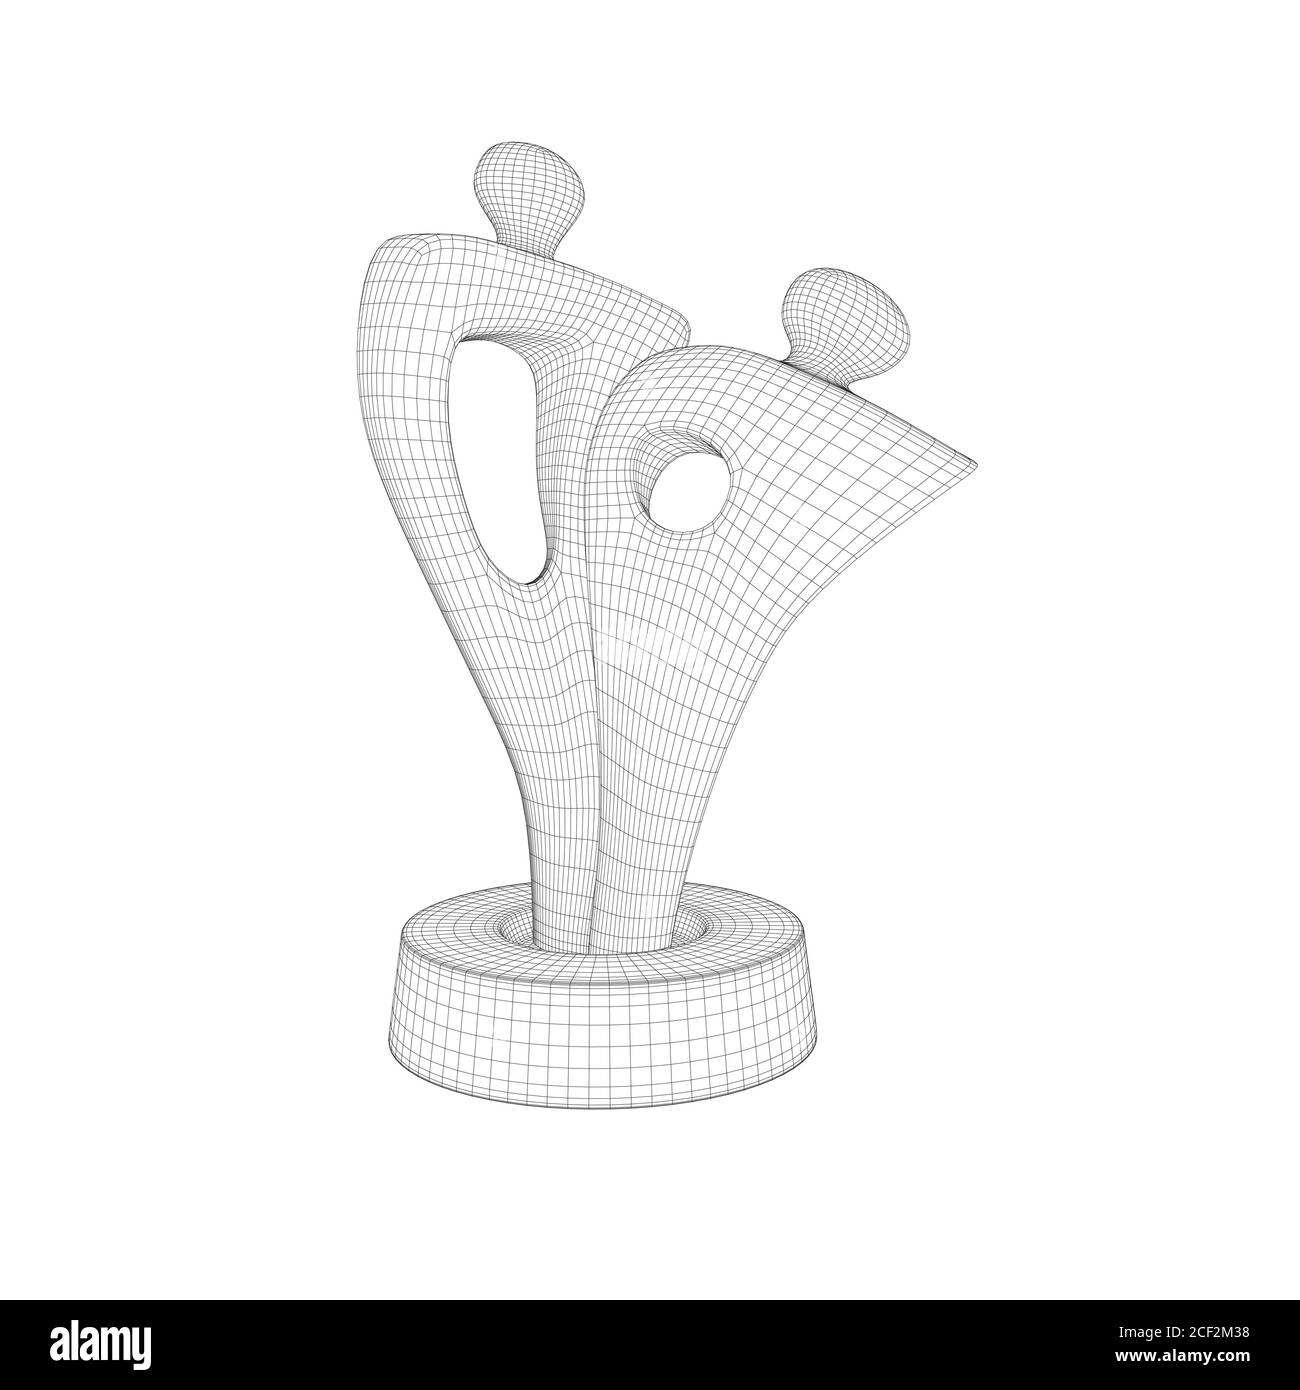 Élément filaire d'une statue abstraite avec deux formes humaines. La statue est isolée sur fond blanc. 3D. Illustration vectorielle Illustration de Vecteur